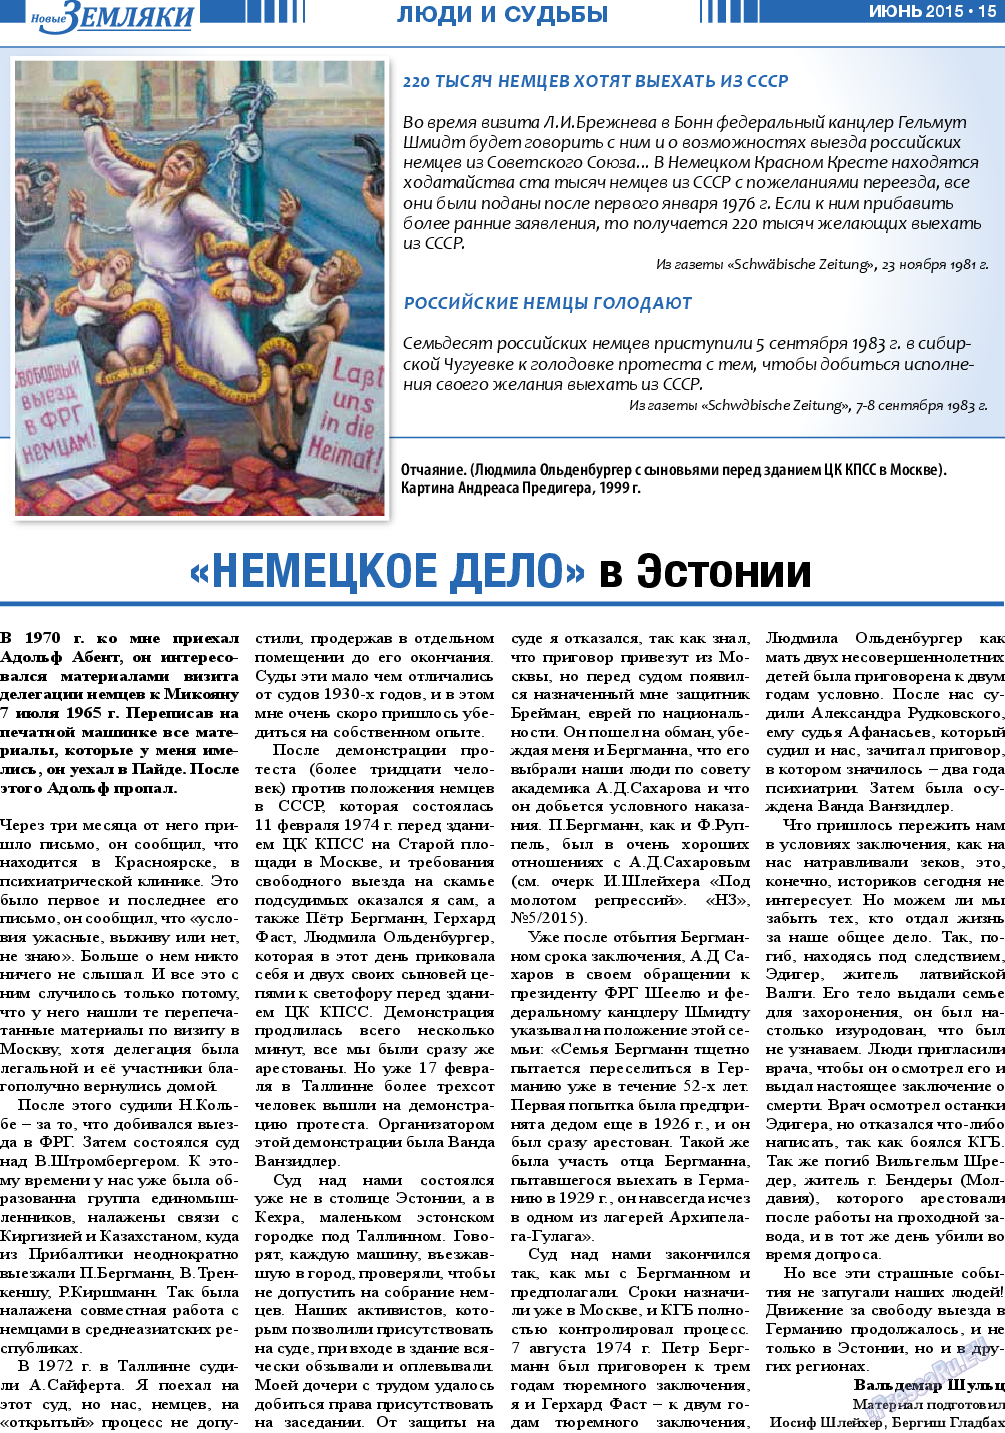 Новые Земляки, газета. 2015 №6 стр.15